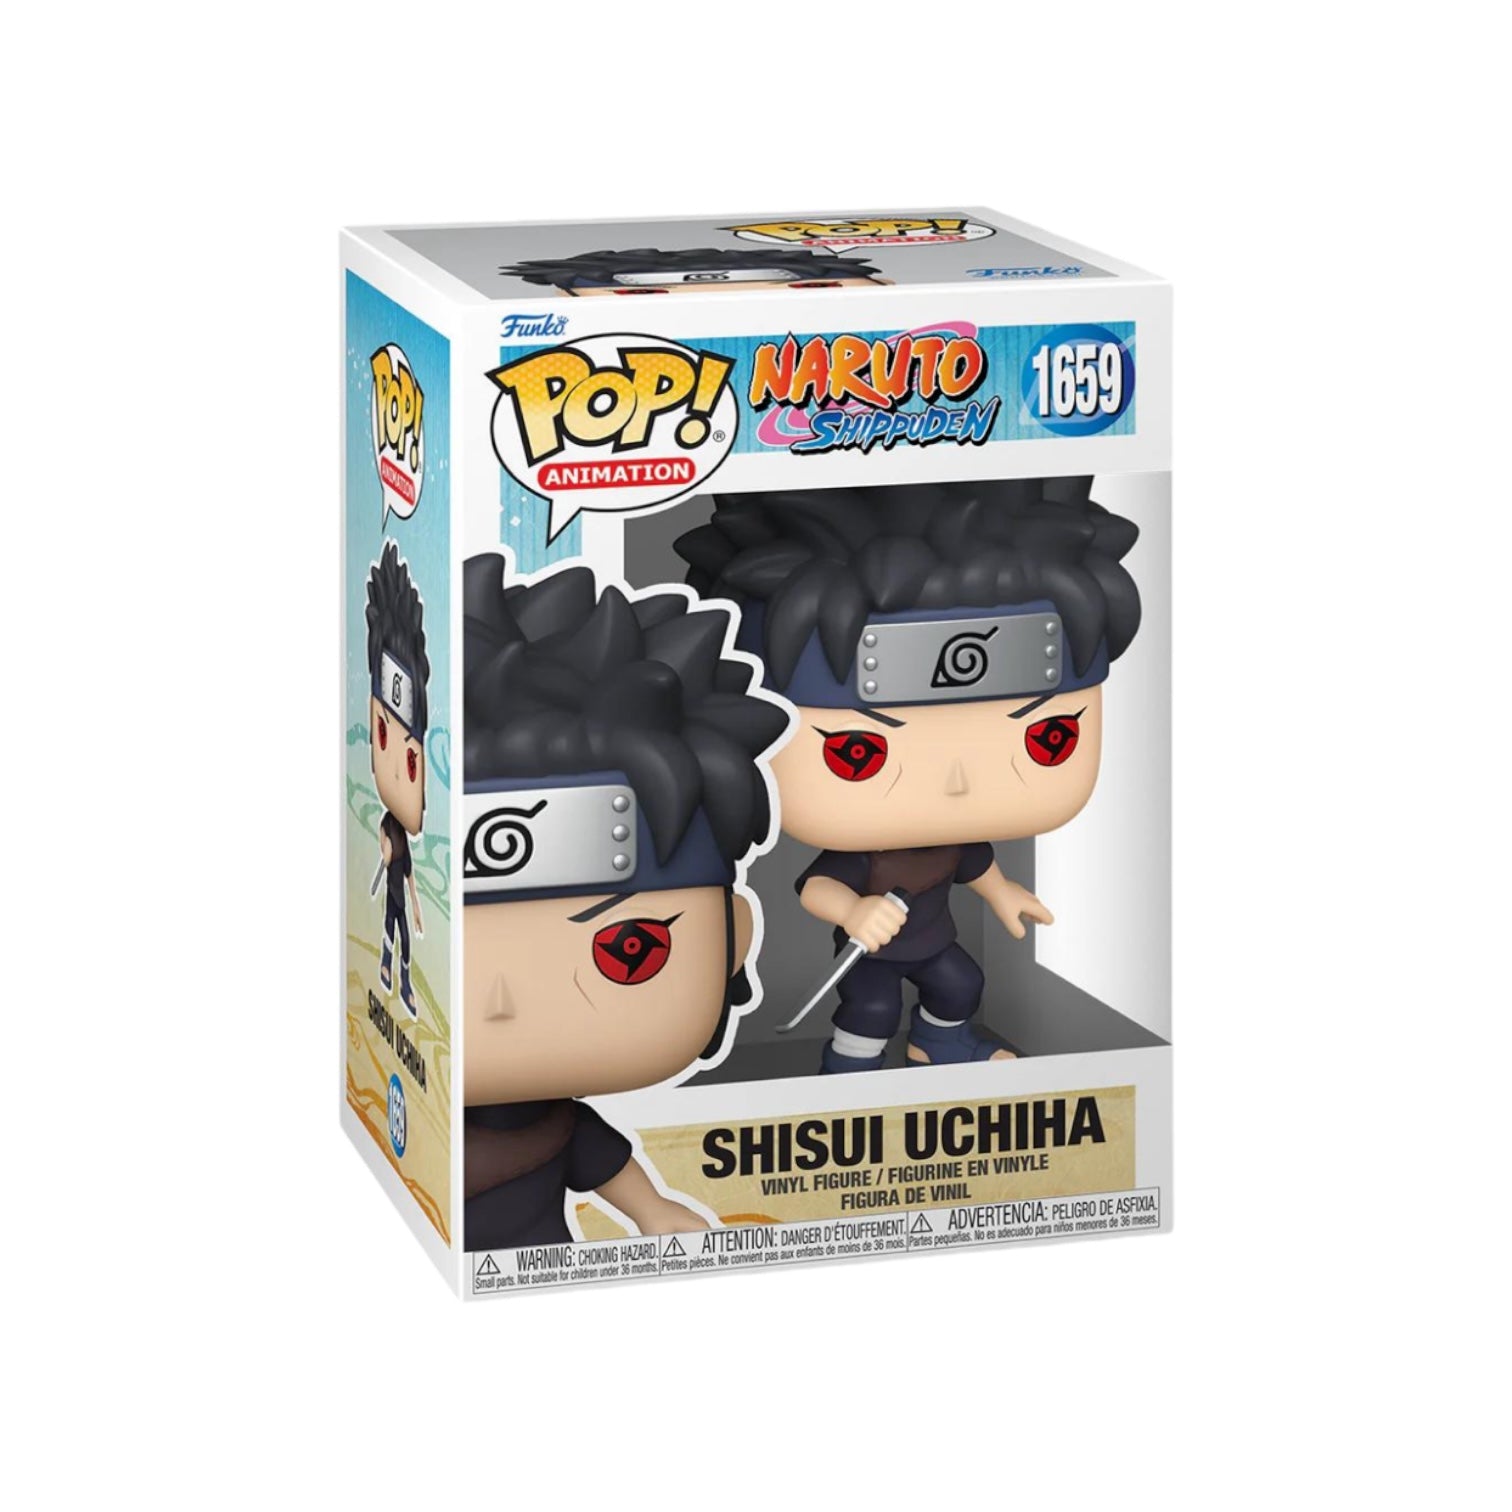 Shisui Uchiha #1659 Funko Pop! - Naruto Shippuden - PREORDER